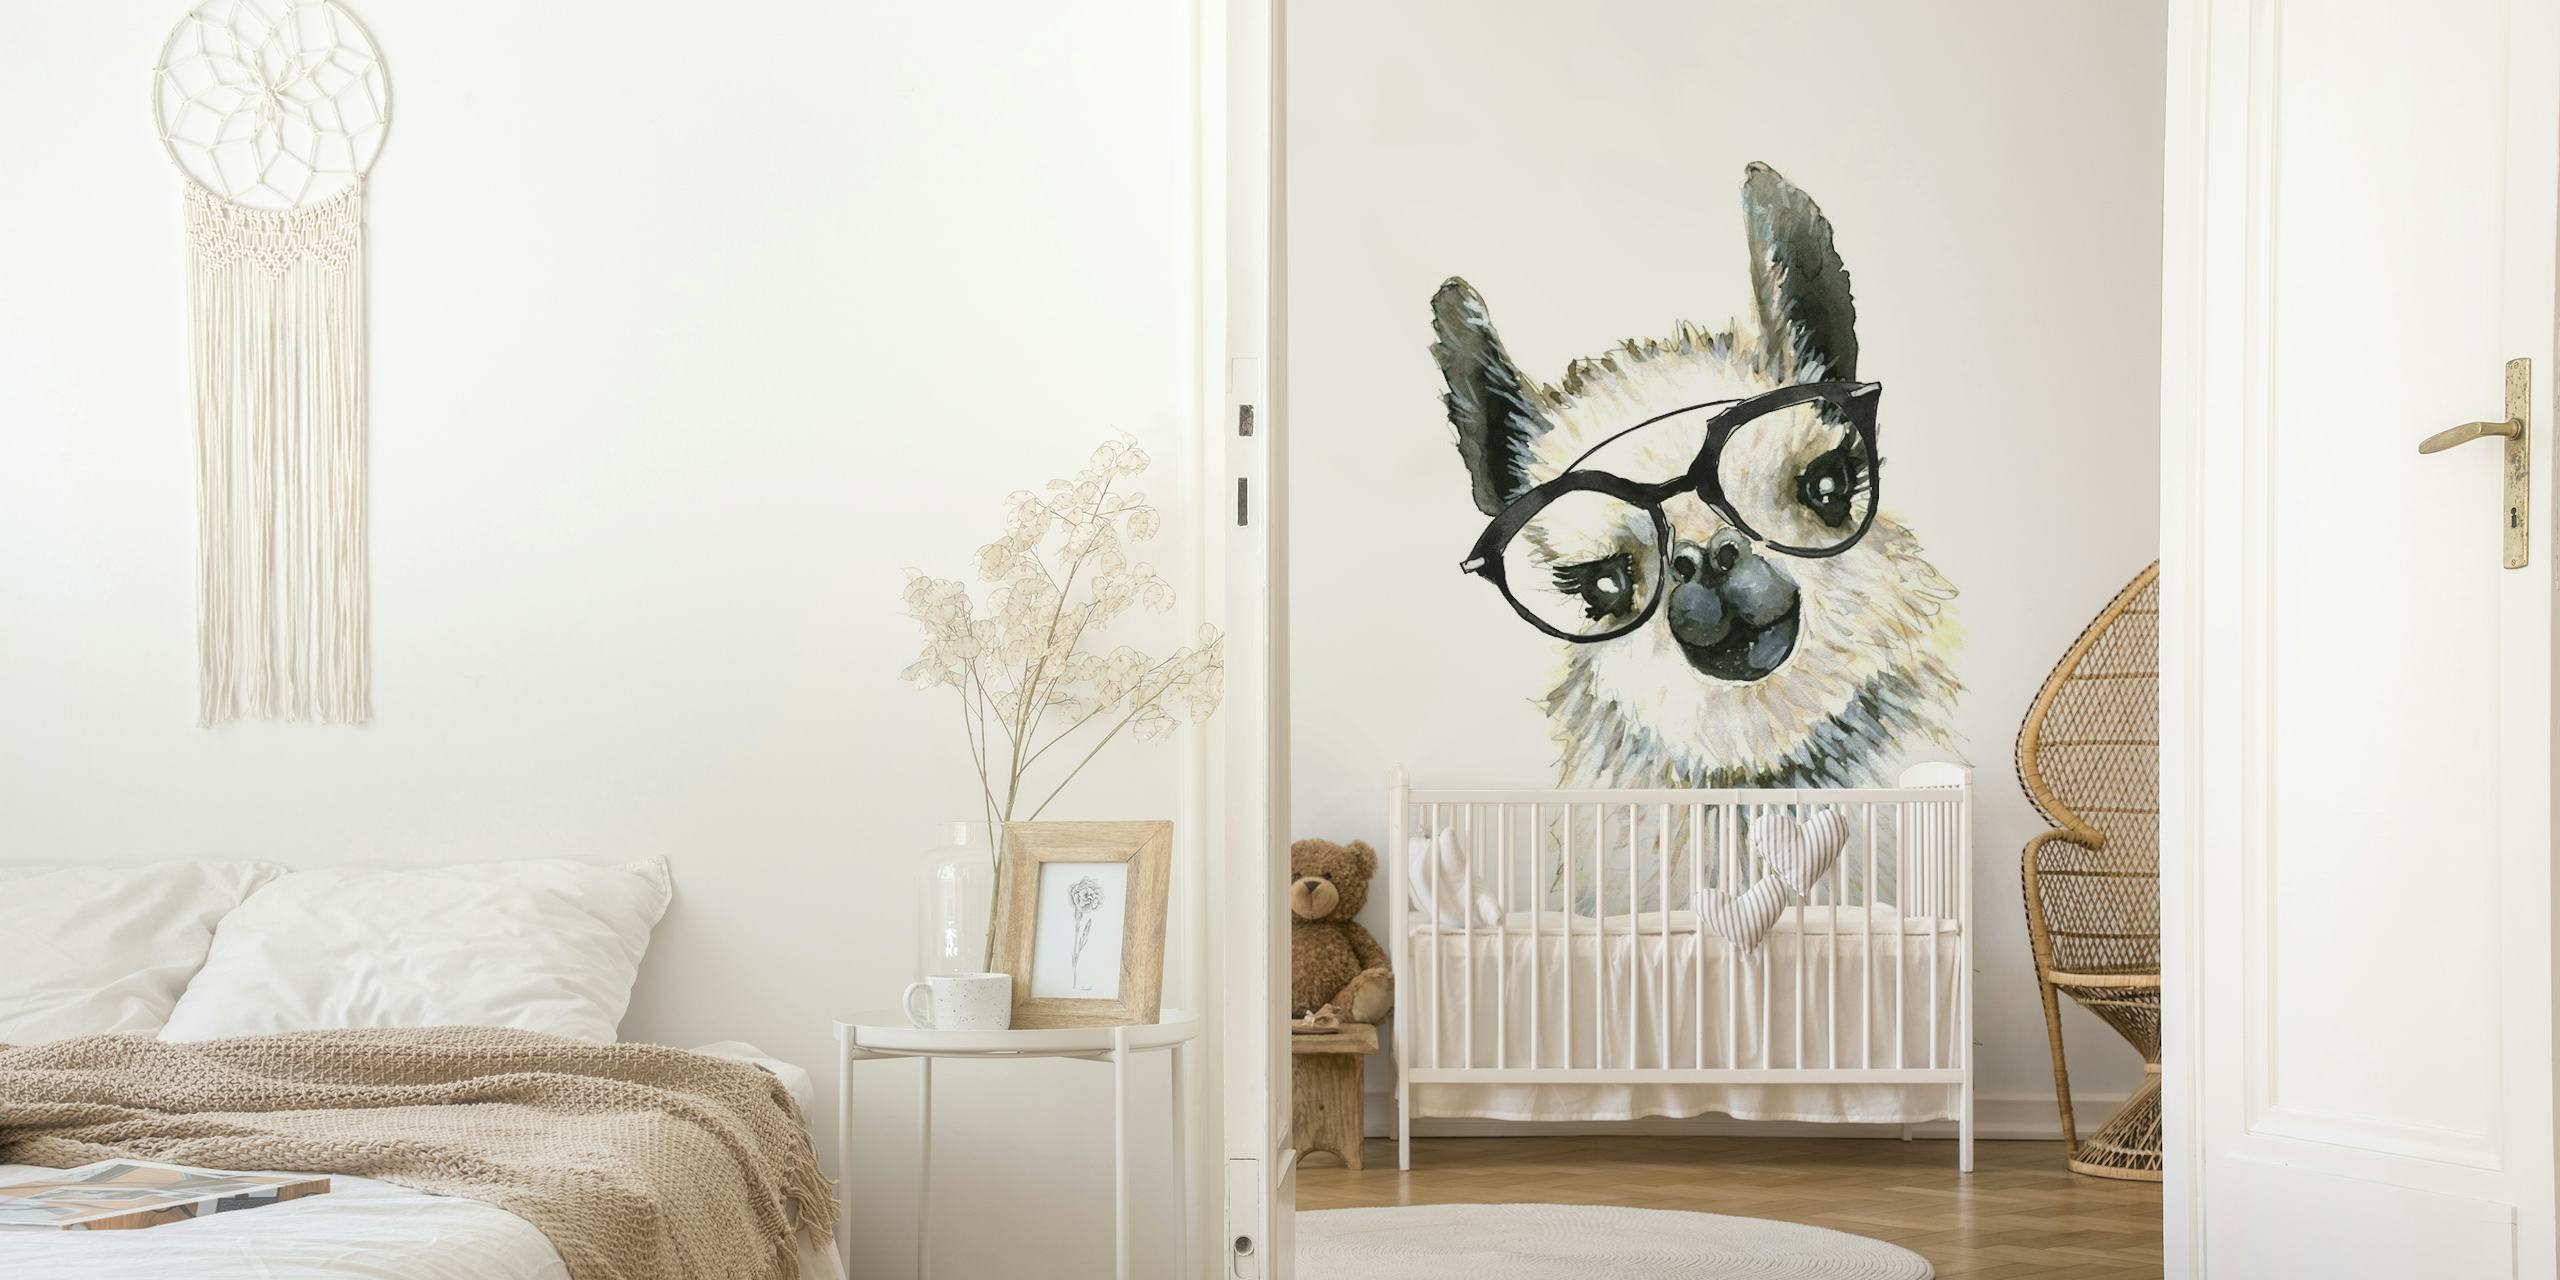 Ilustração em aquarela de uma lhama usando óculos em um mural de parede.